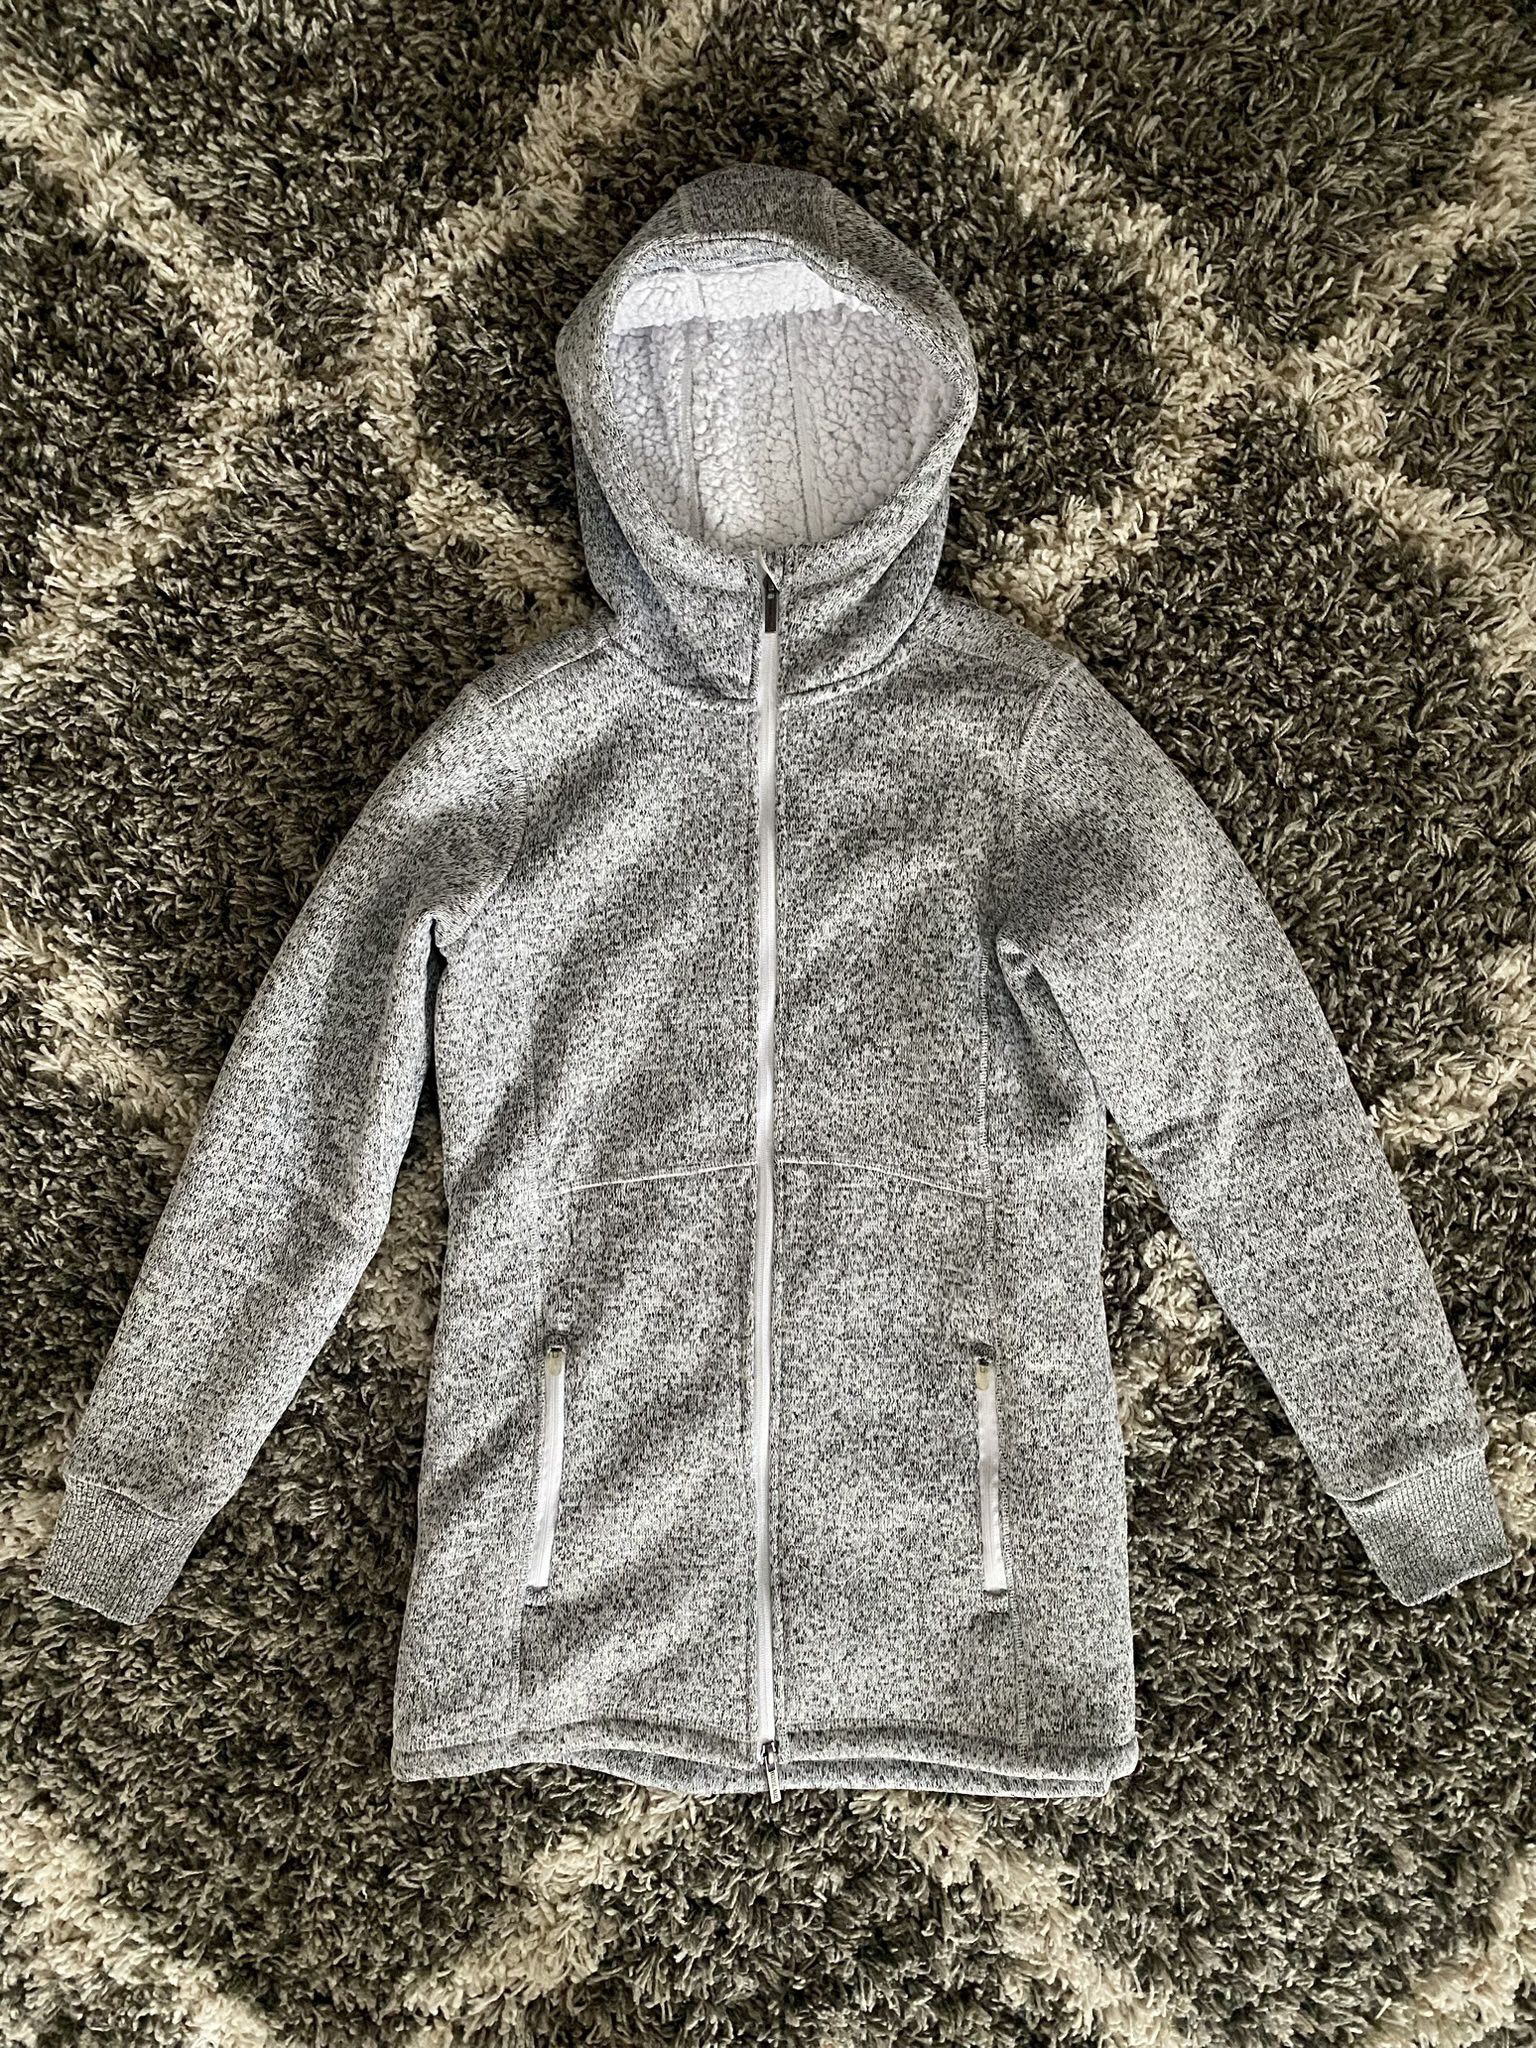 Women’s Sherpa fleece hooded jacket (size small)